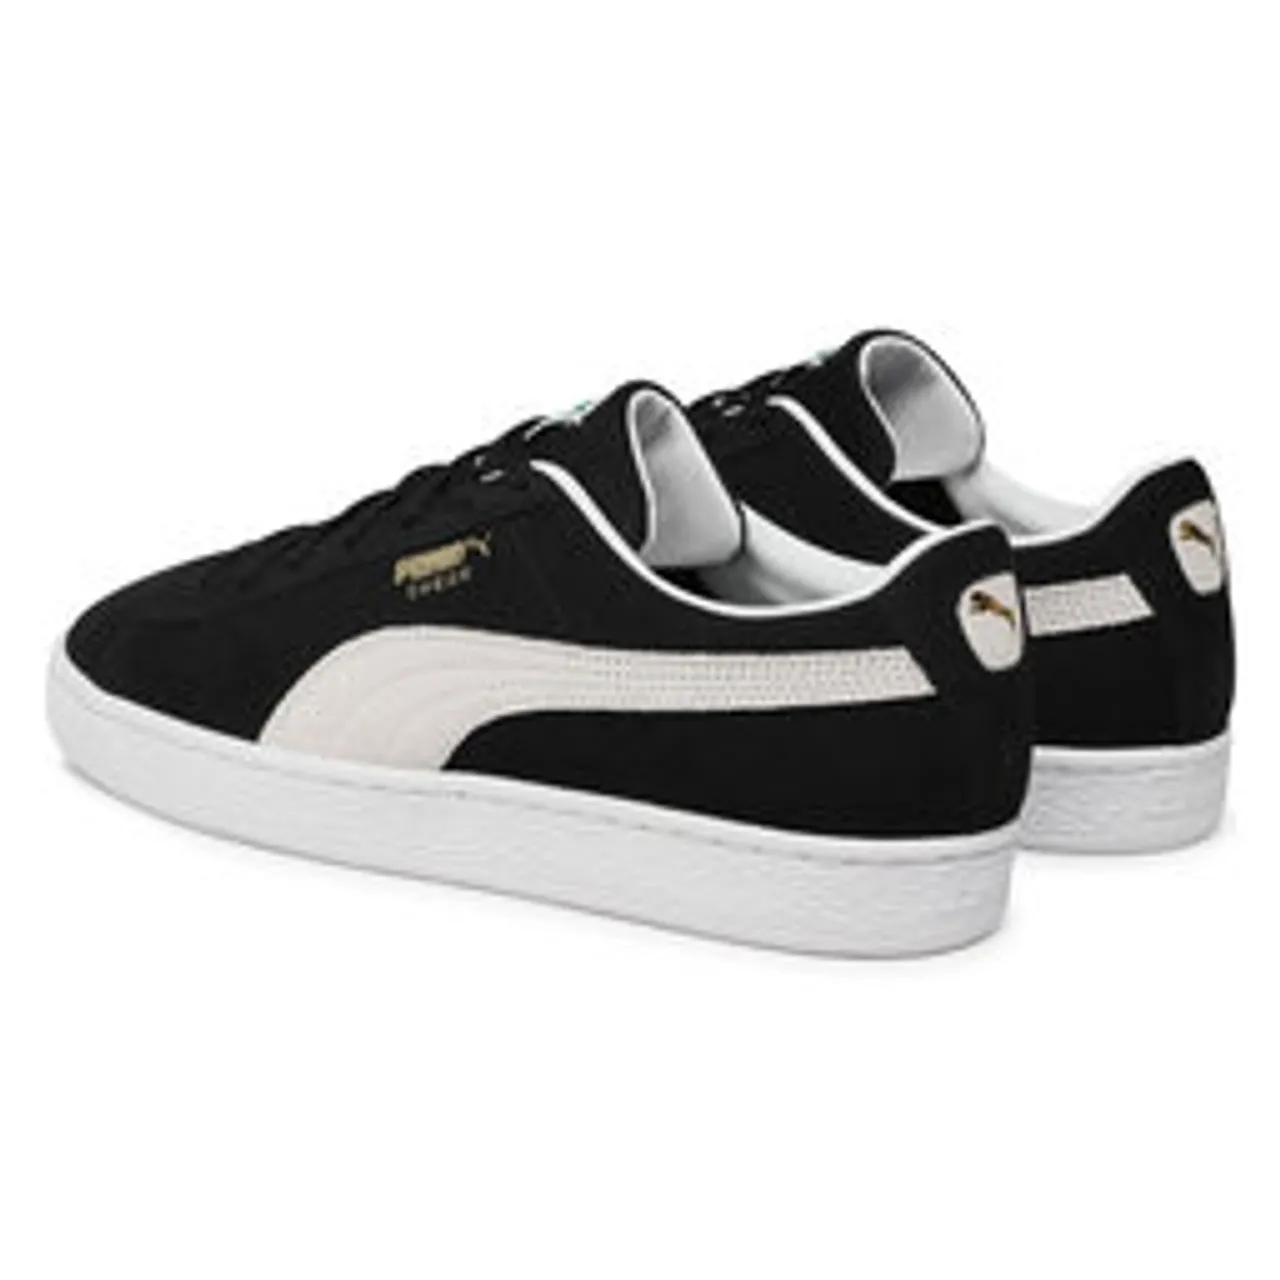 Sneakers Puma Suede Classic XXI 374915 01 Puma Black/Puma White